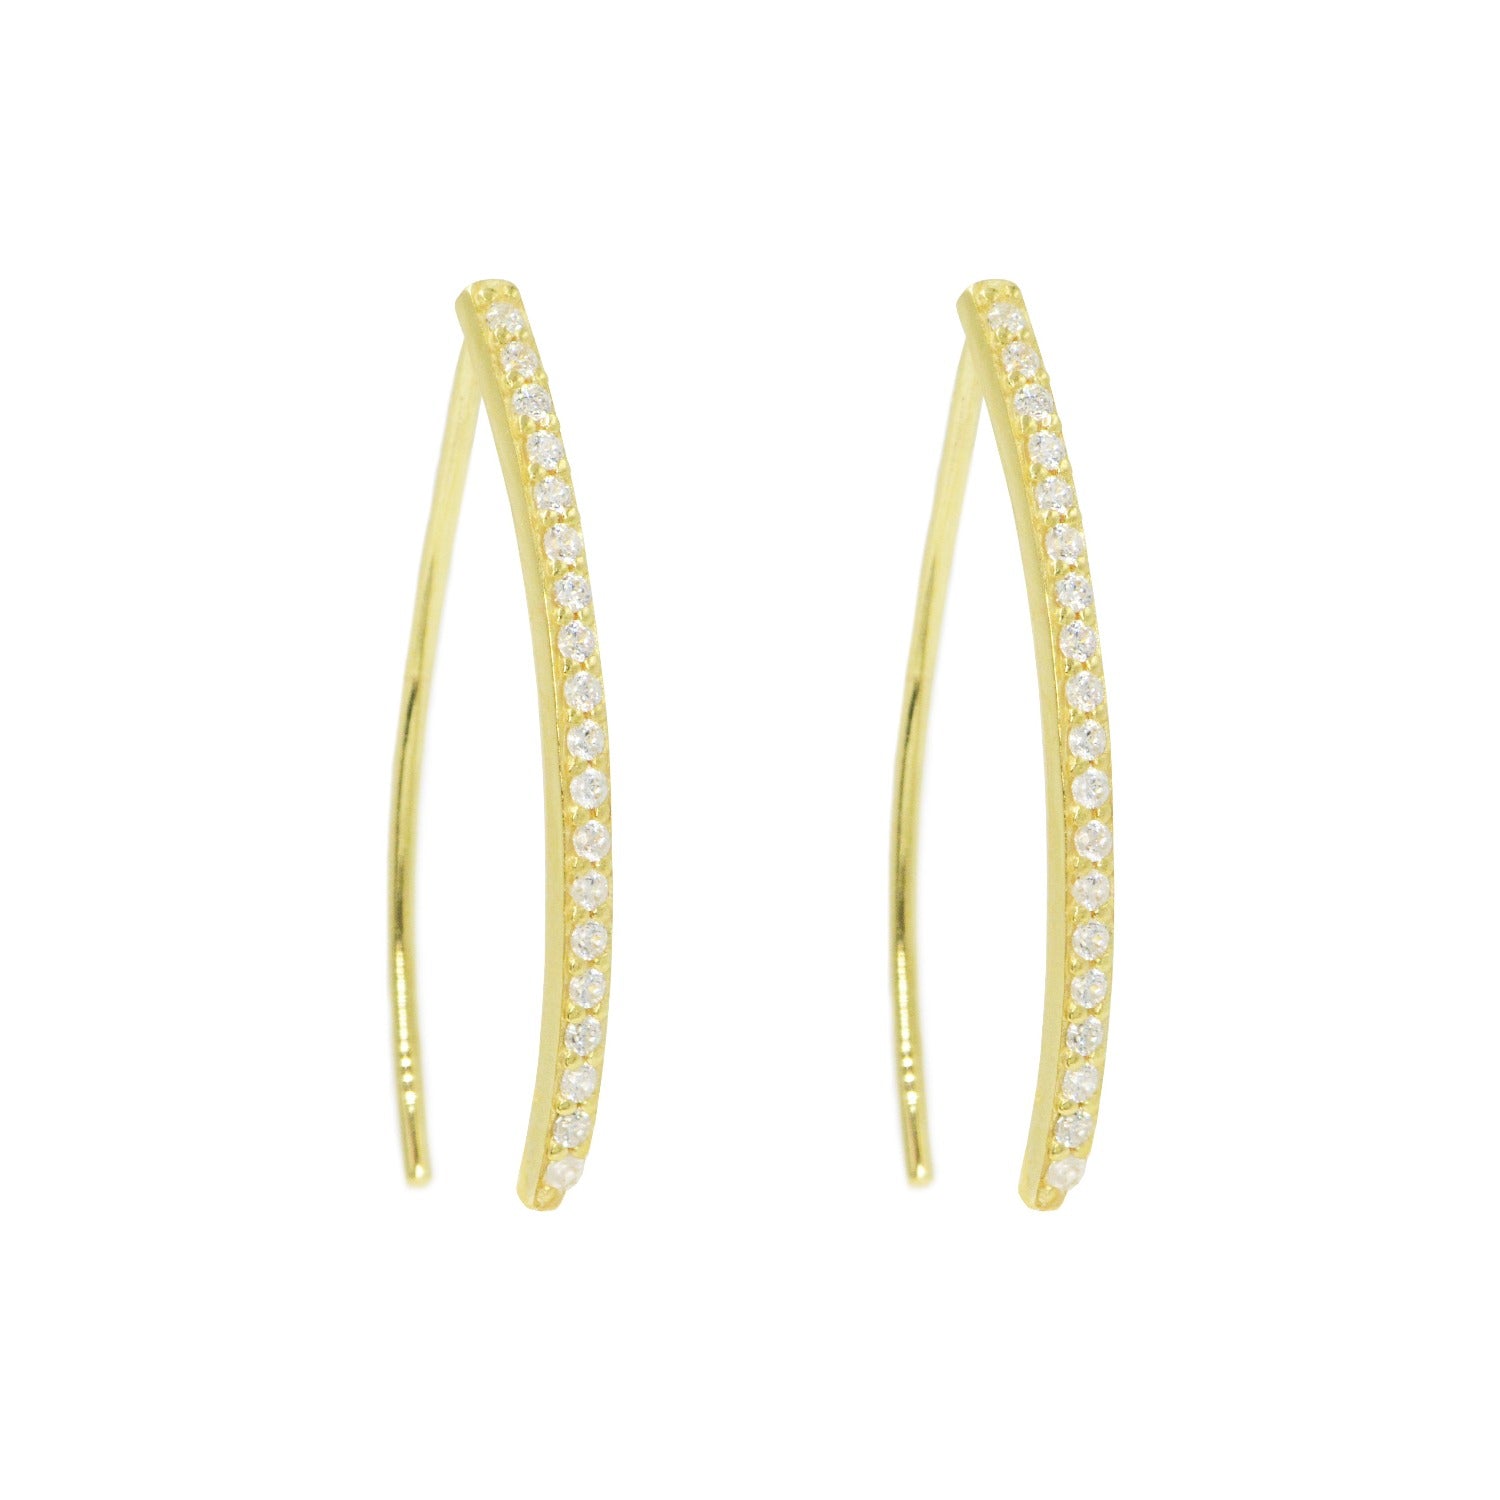 Elegant loop earring threaders with crystals